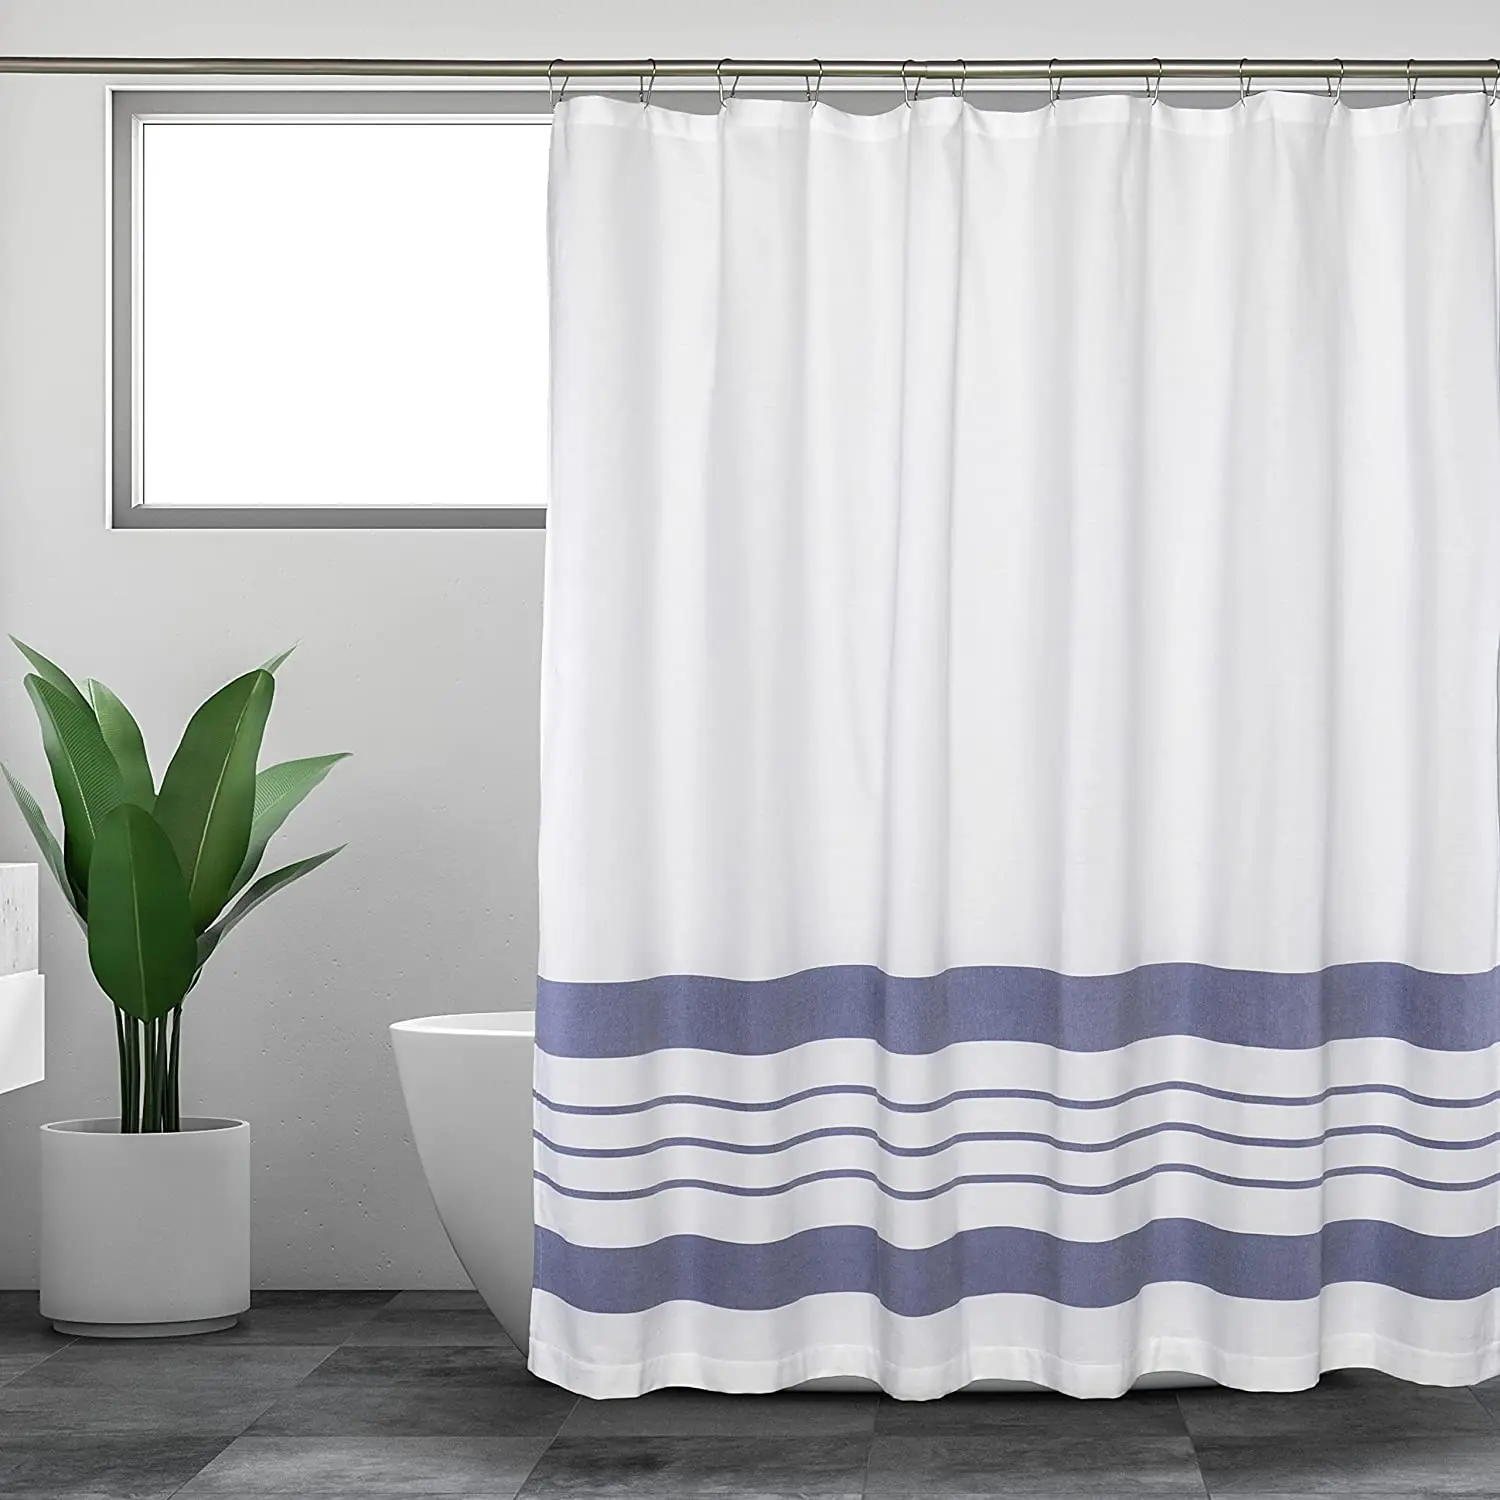 

Синие полосатые занавески для душа, современные минималистичные белые занавески для ванной с геометрическими линиями, занавески для ванной из полиэстера, декор для ванной комнаты с крючками